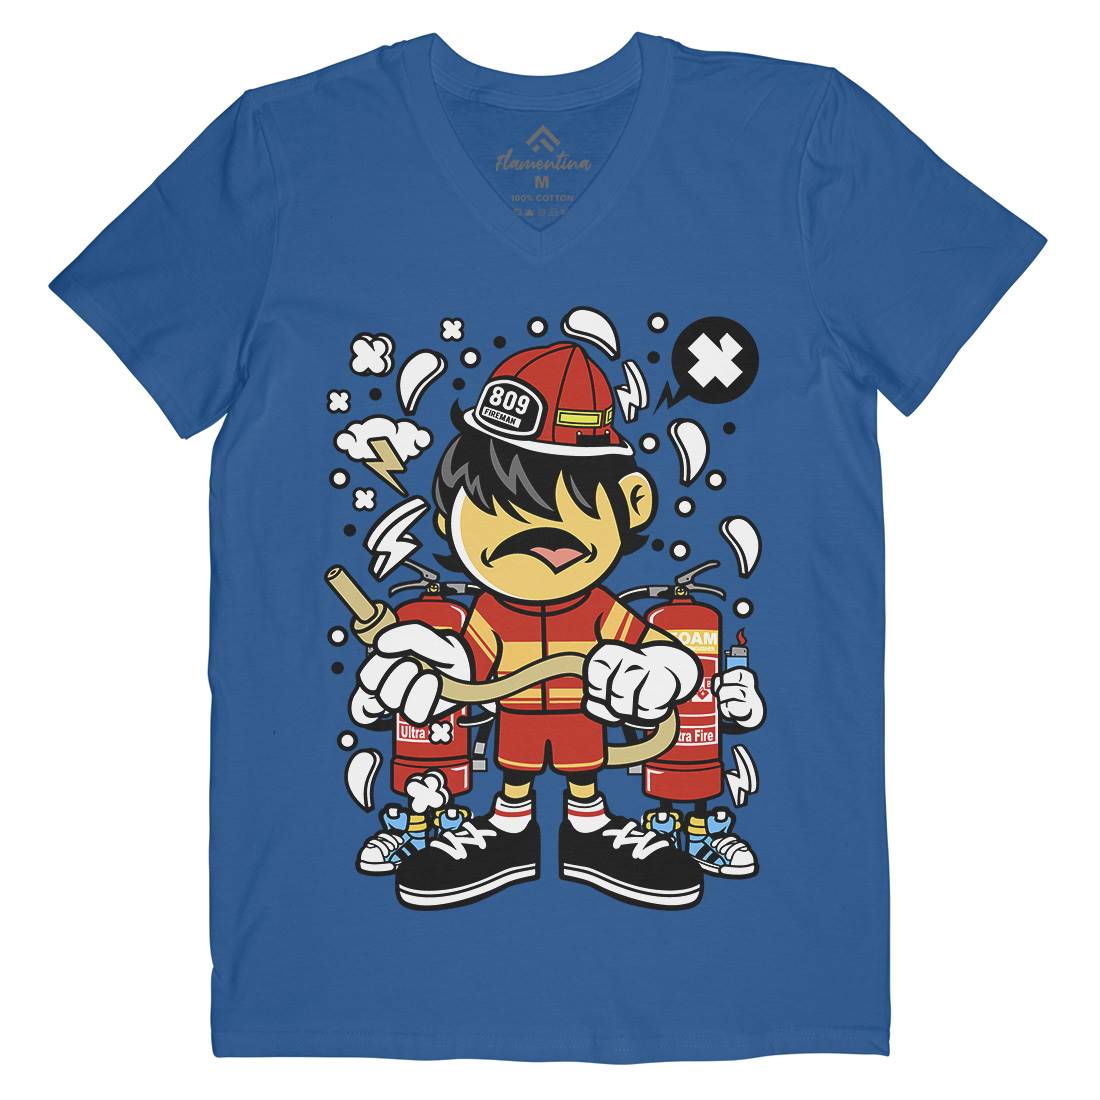 Firefighter Kid Mens V-Neck T-Shirt Firefighters C108